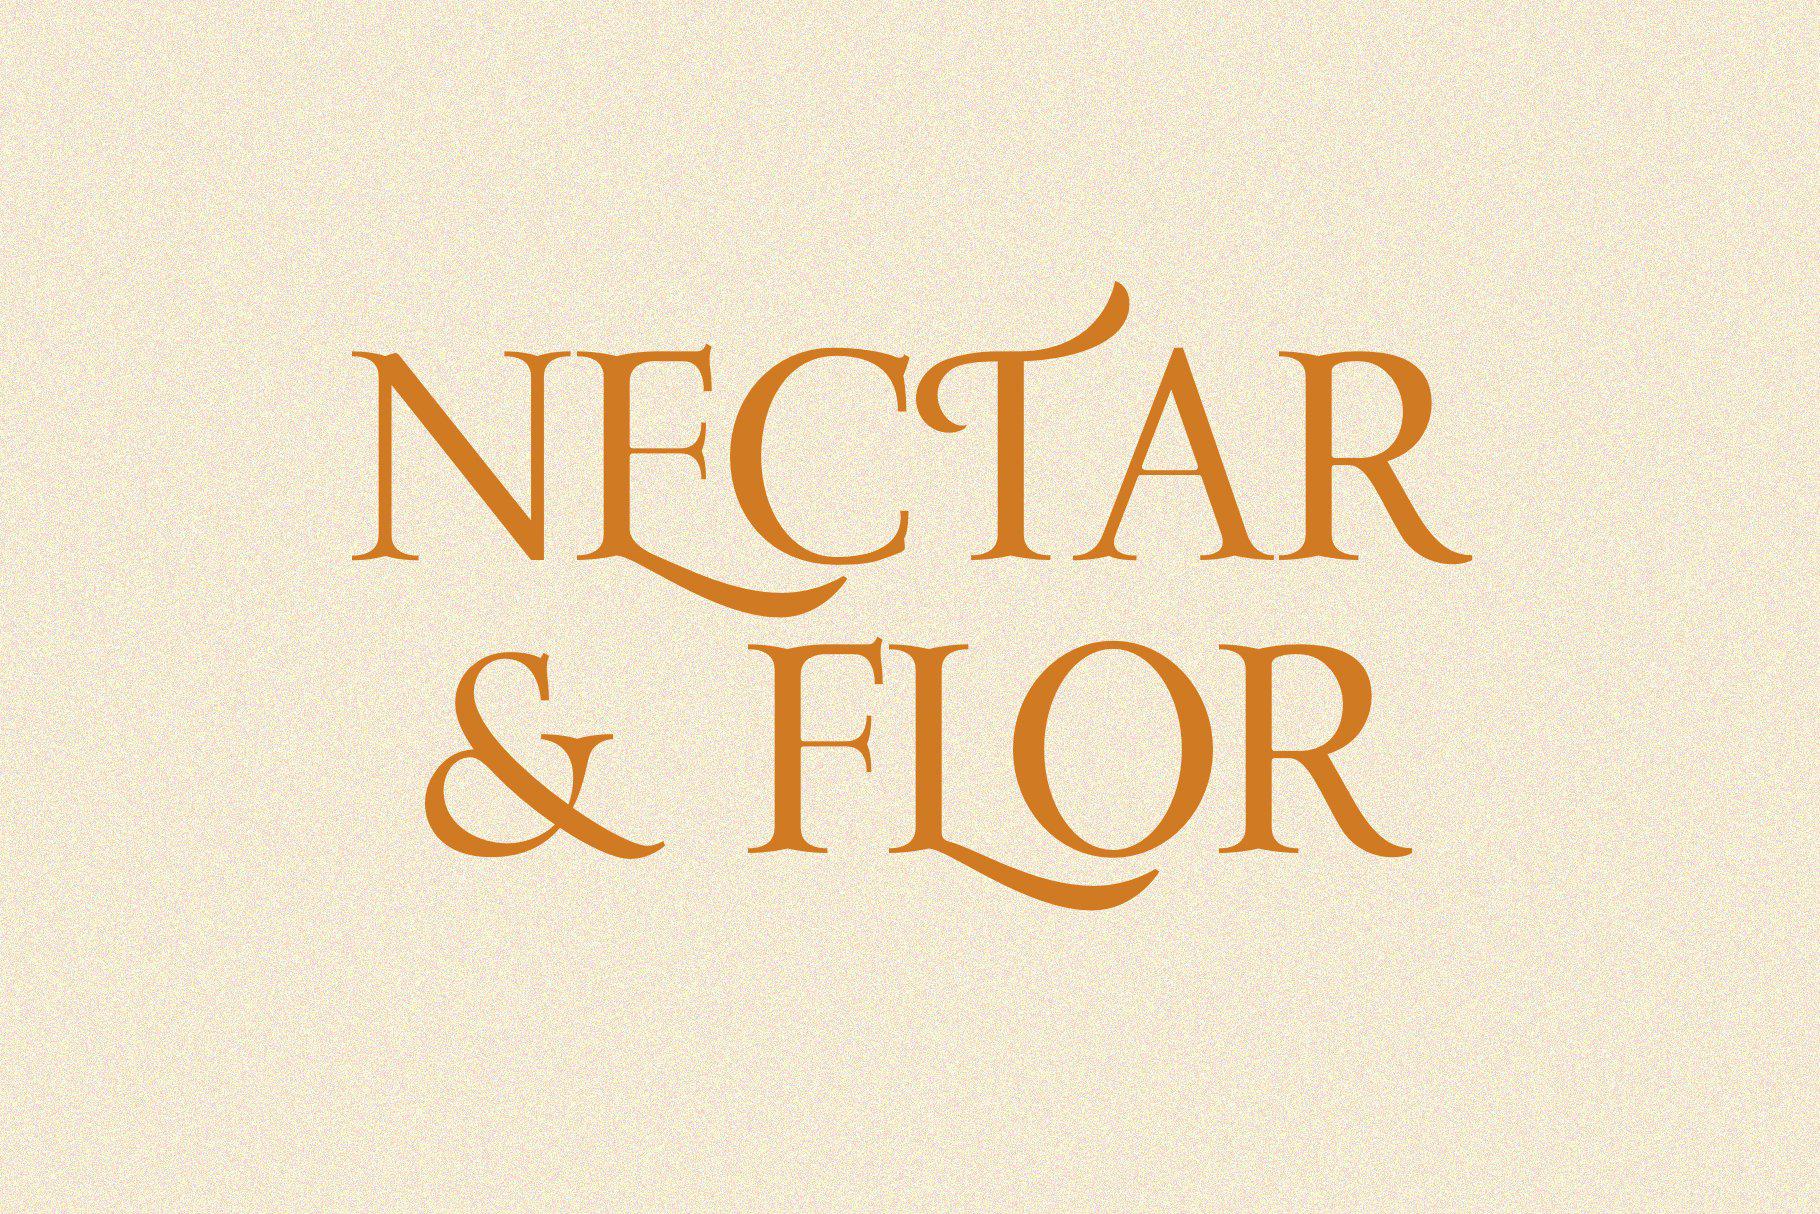 Nectar & Flor